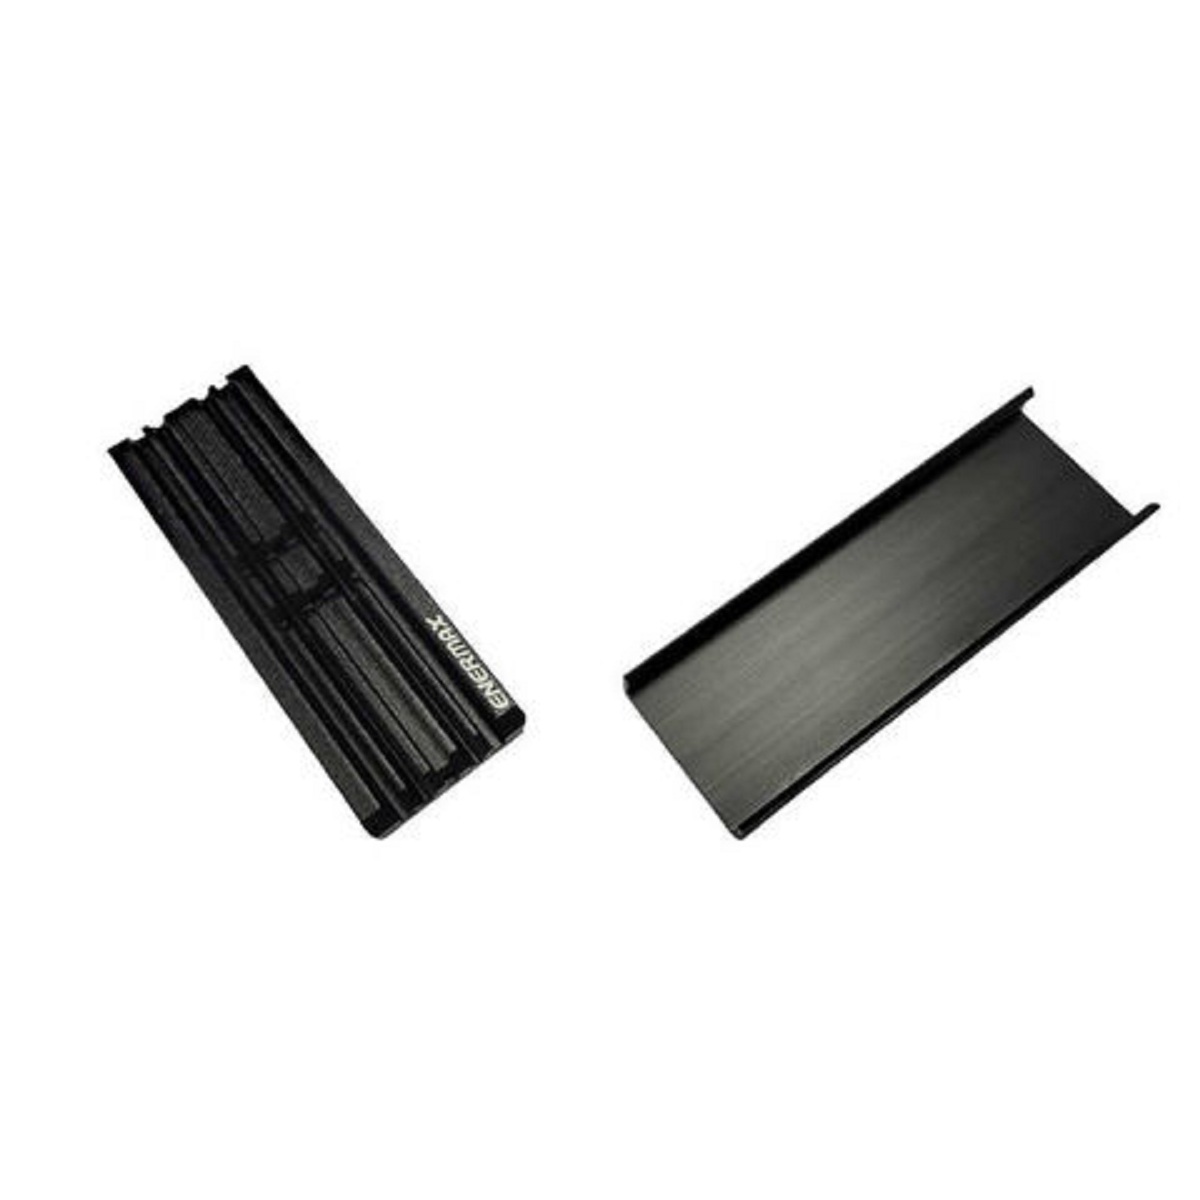 M.2 SSD Dissipateur thermique pour modules 2280 compatible Playstation 5